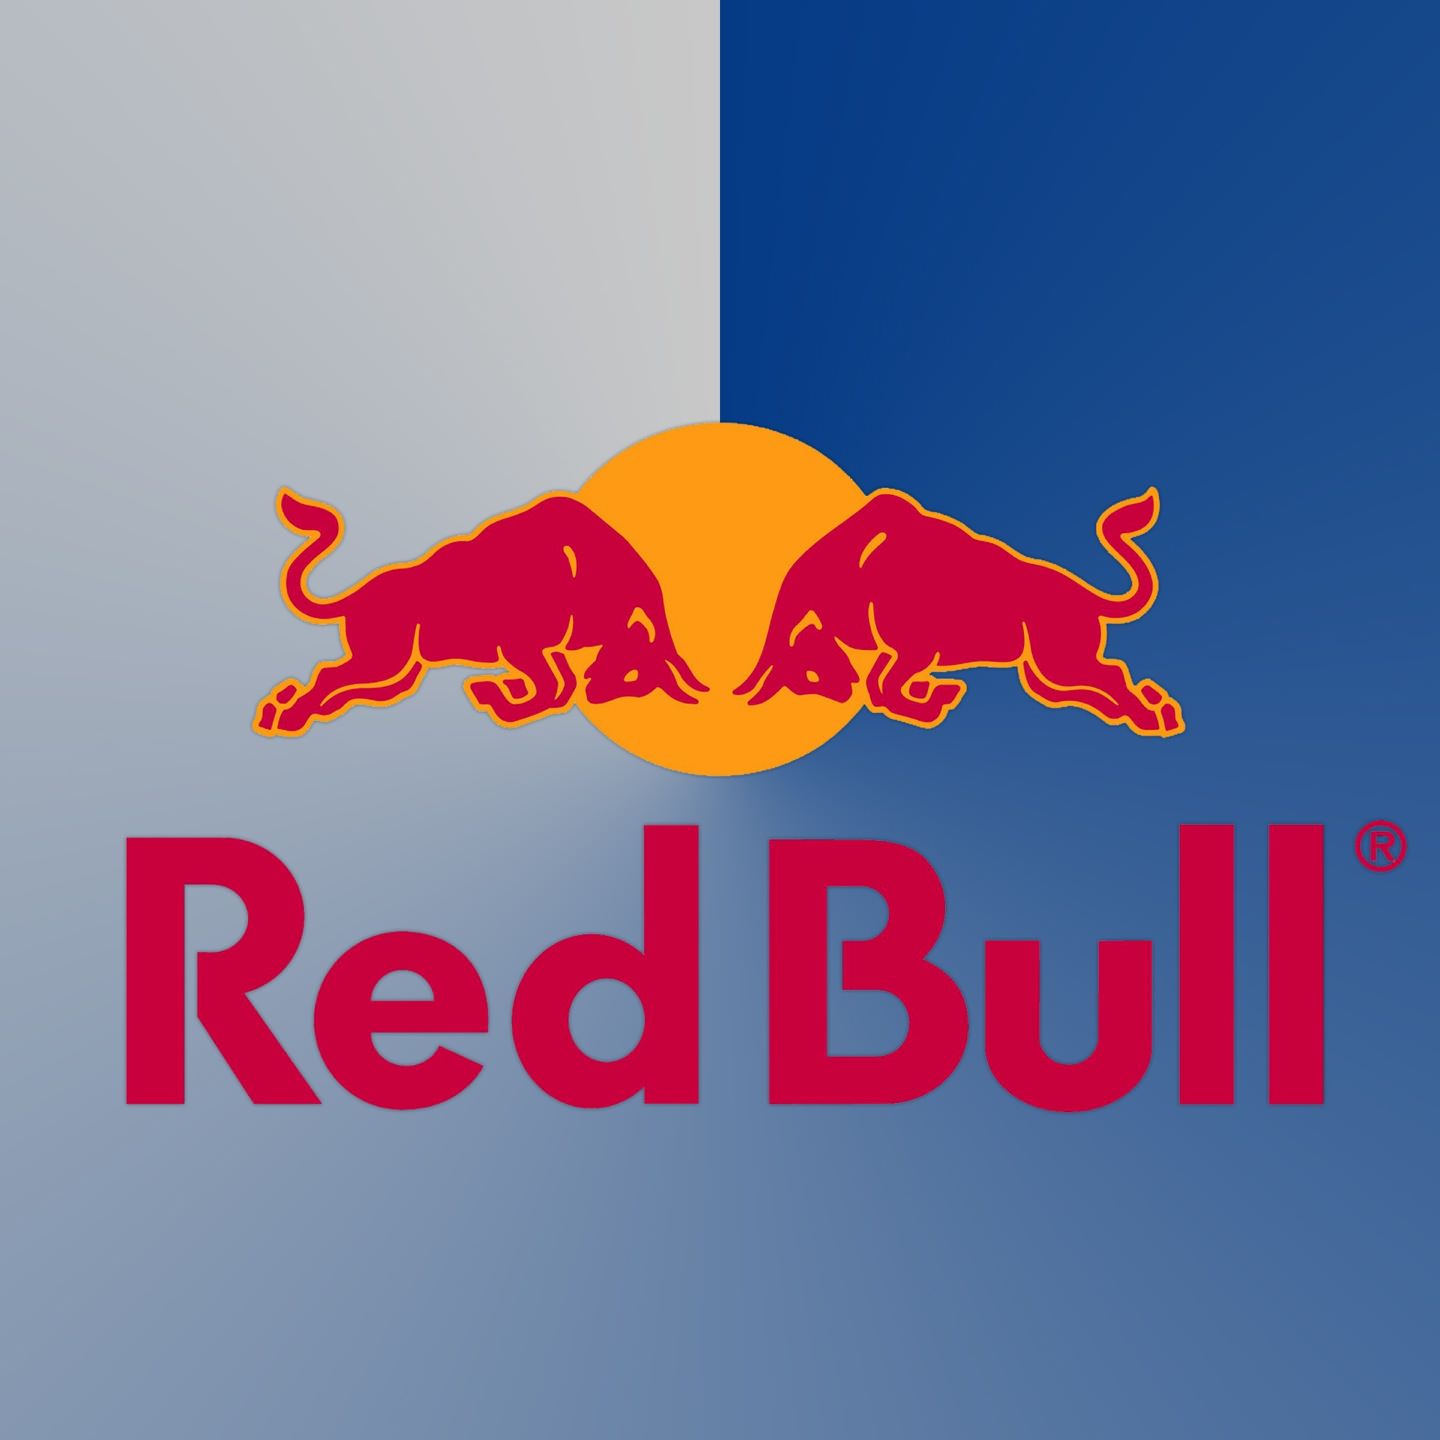 Red Bull logo | wallpaper.sc SmartPhone